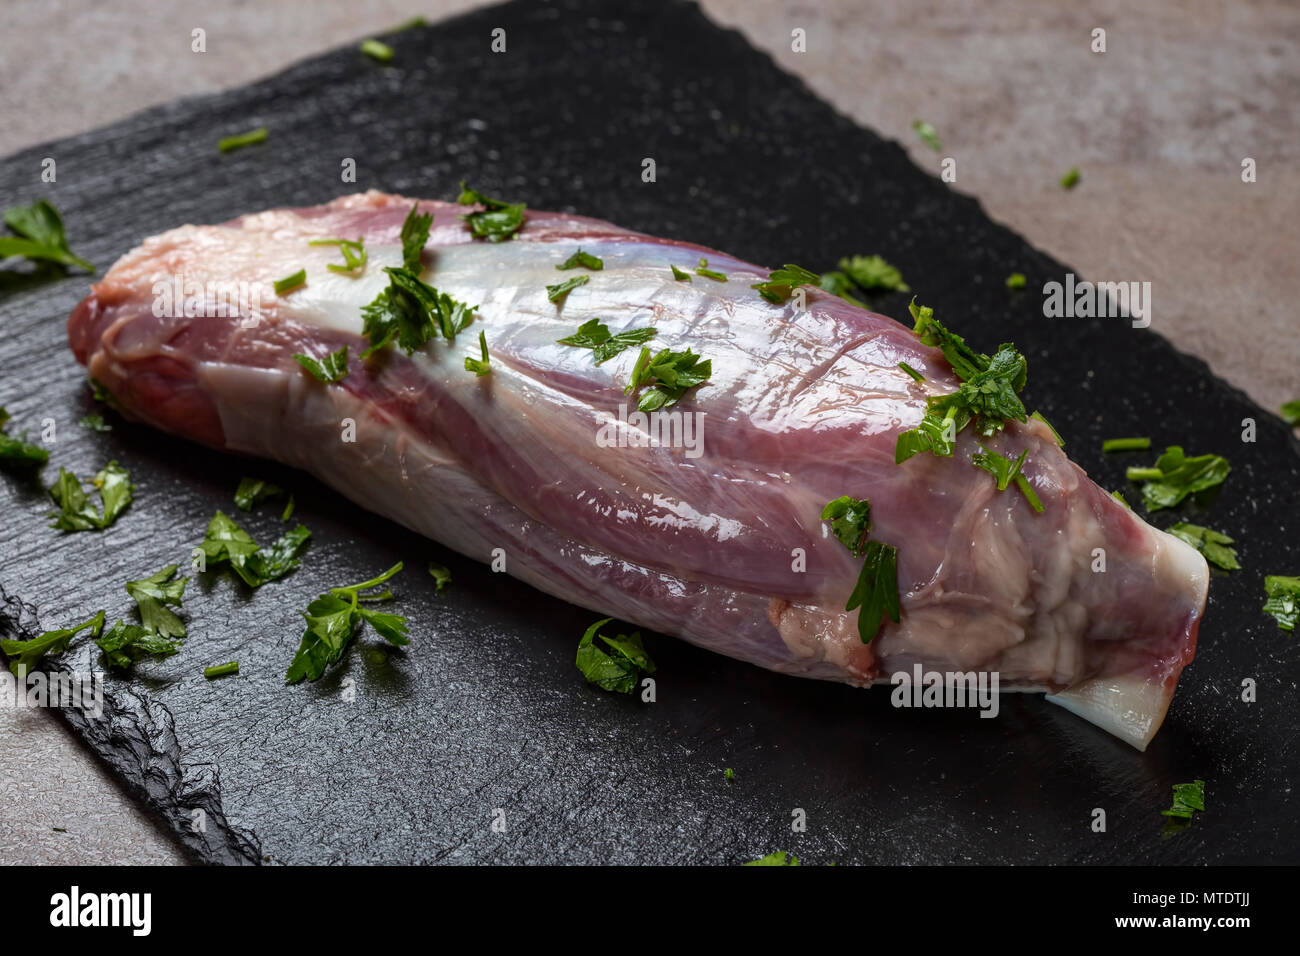 Ein frisches rohes Stück Rindfleisch mit frischem Grün Petersilie auf dunklem Schiefer Stockfoto